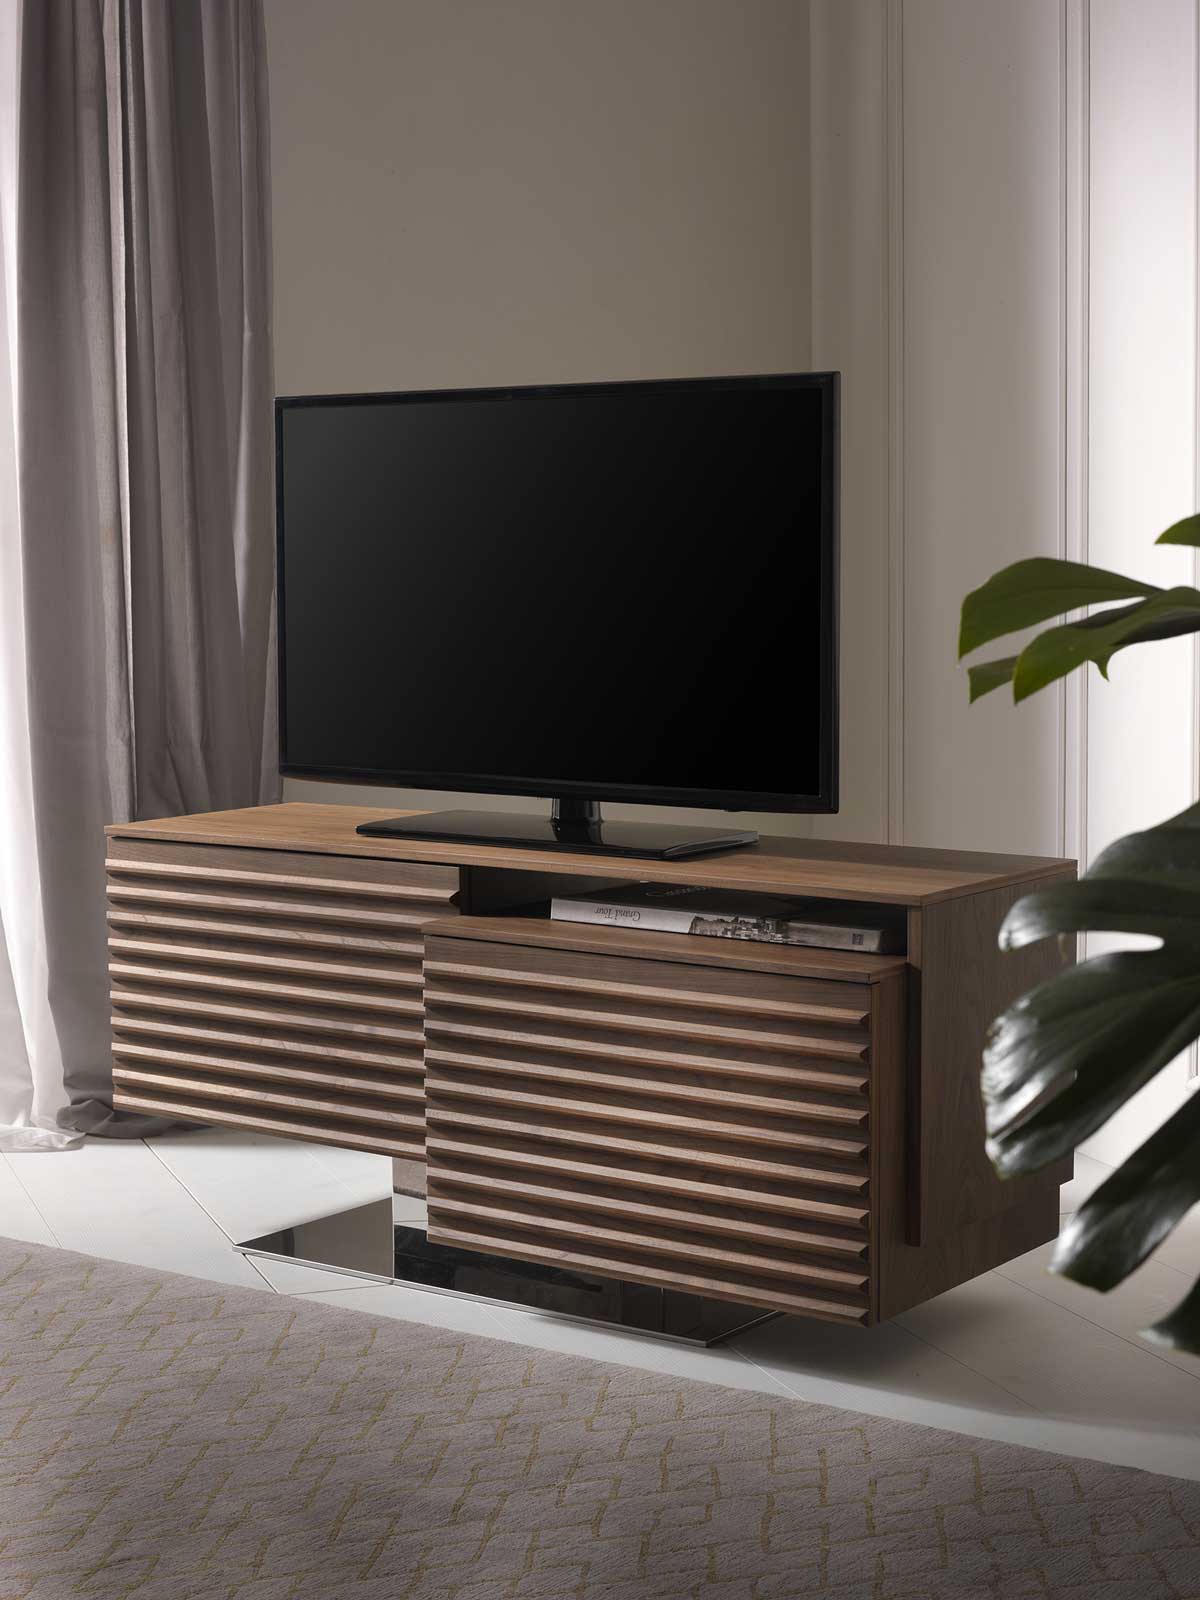 Porte-tv en bois tournant. Achetez nos meubles hauts de gamme realisés artisanalement en italie. Découvrez notre boutique en ligne de meubles design.